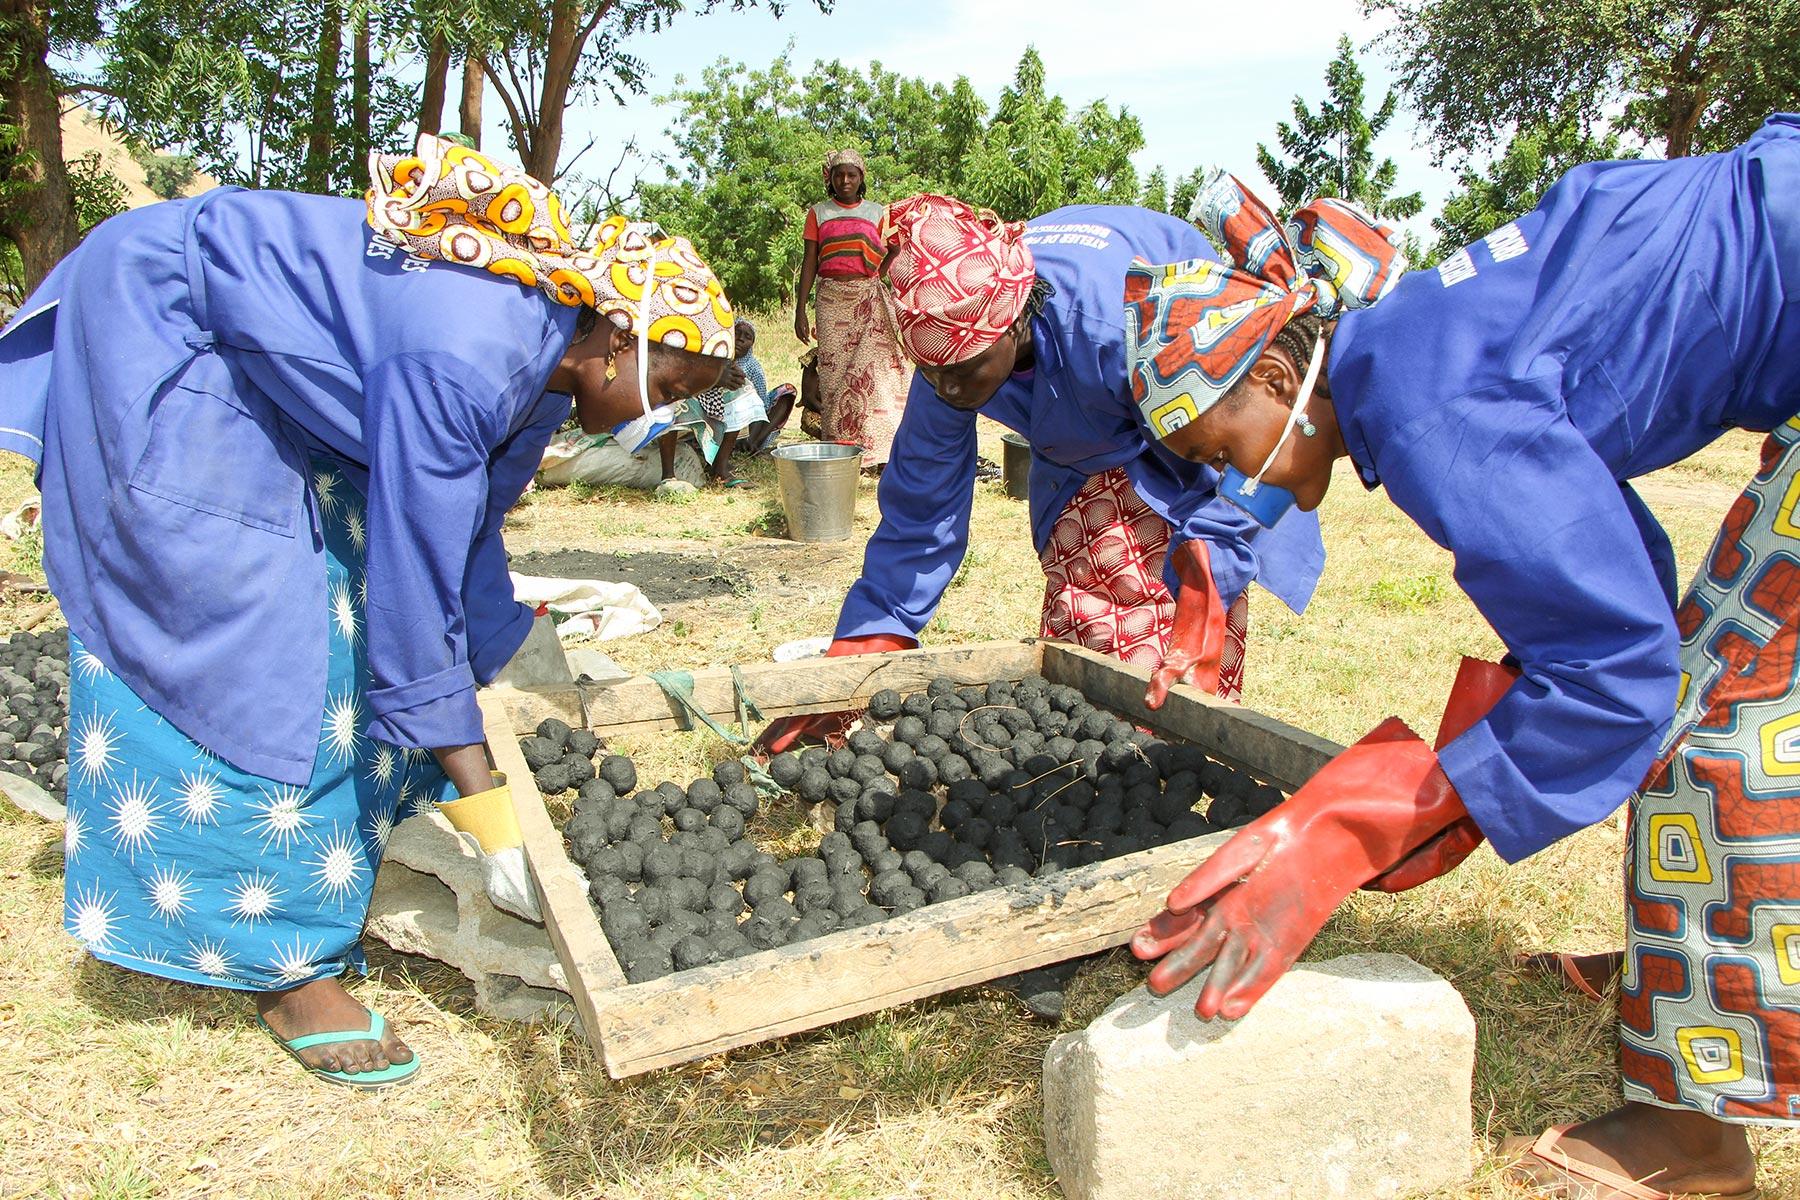 Women in Cameroonâs Minawao refugee camp making ecological charcoal.Â Photo: Notang TOUKAP Justin